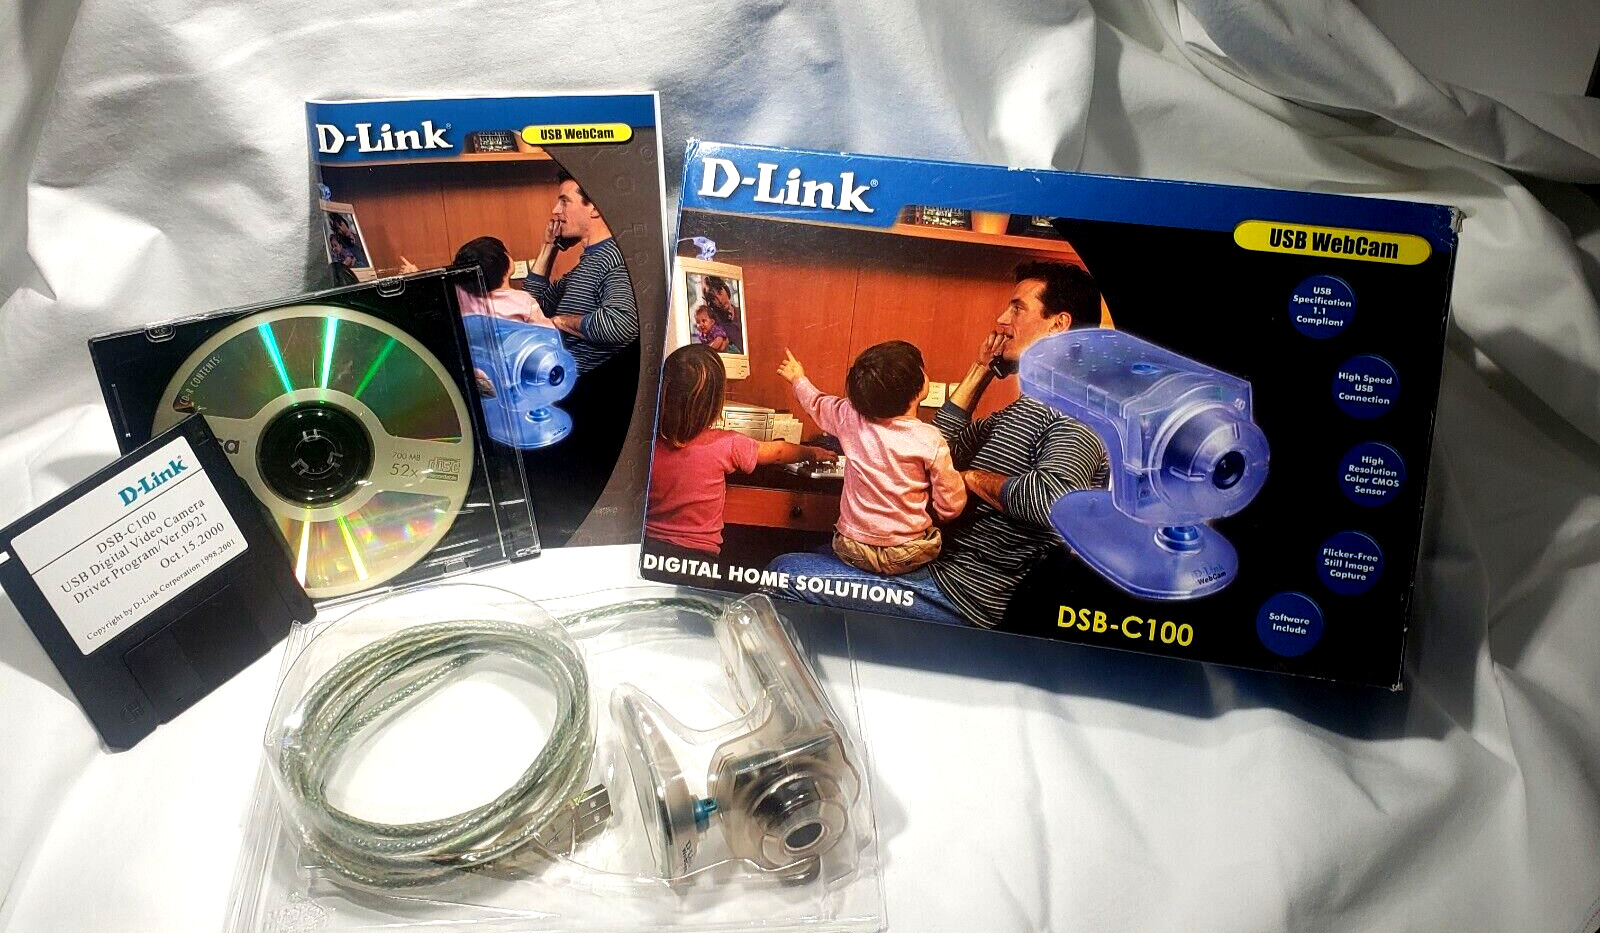 D-Link  Web Cam USB Digital Video Retro Camera Surveillance New DSB C100